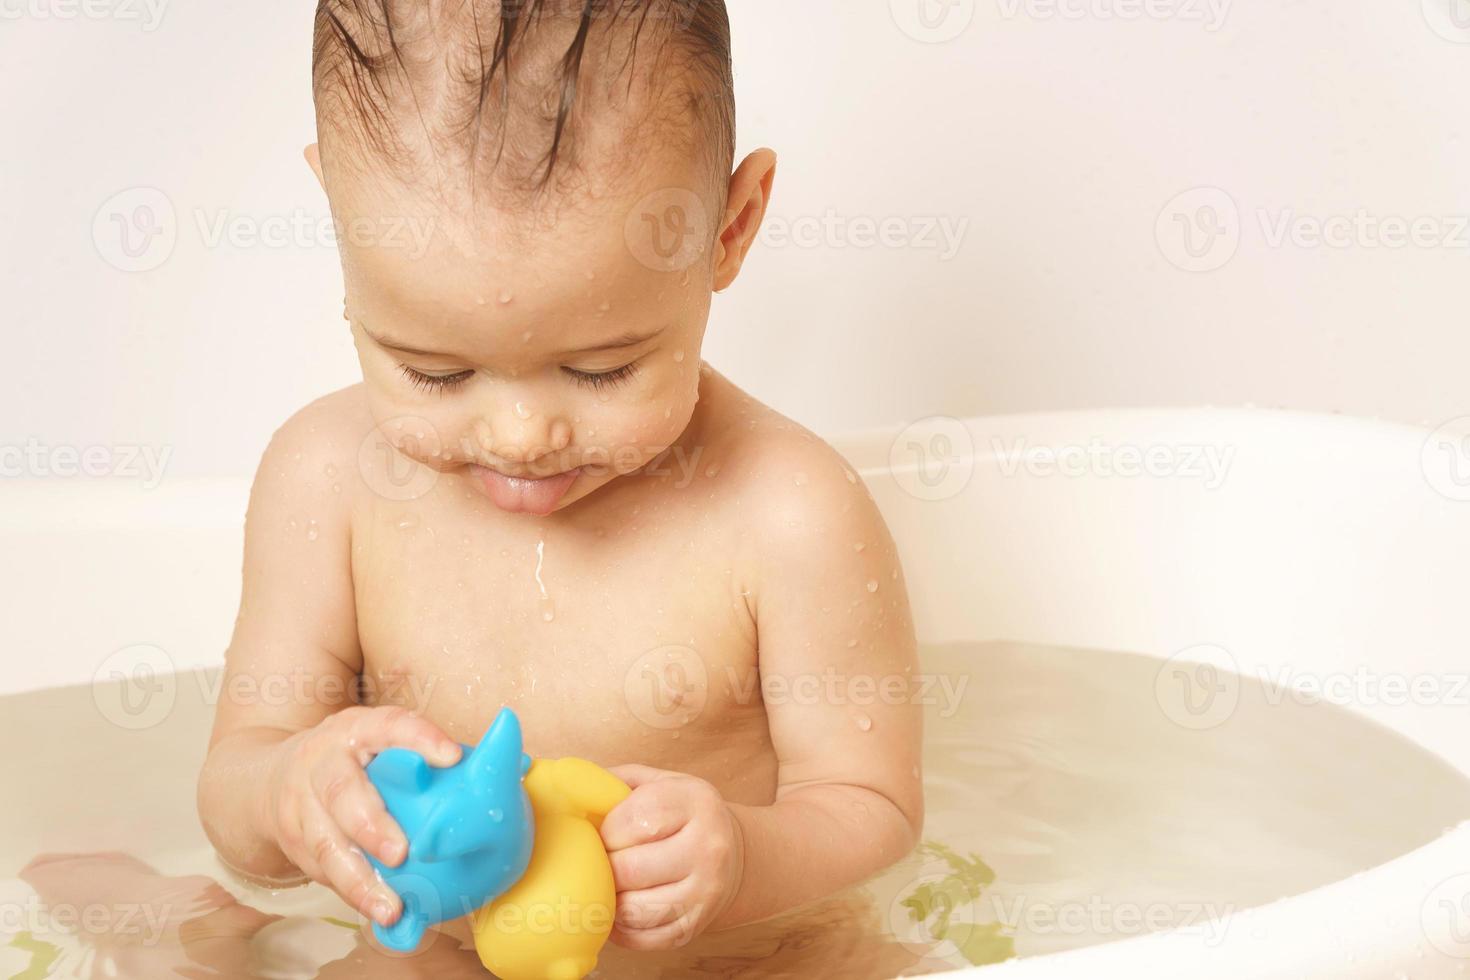 niño jugando con juguetes de goma mientras toma un baño. foto